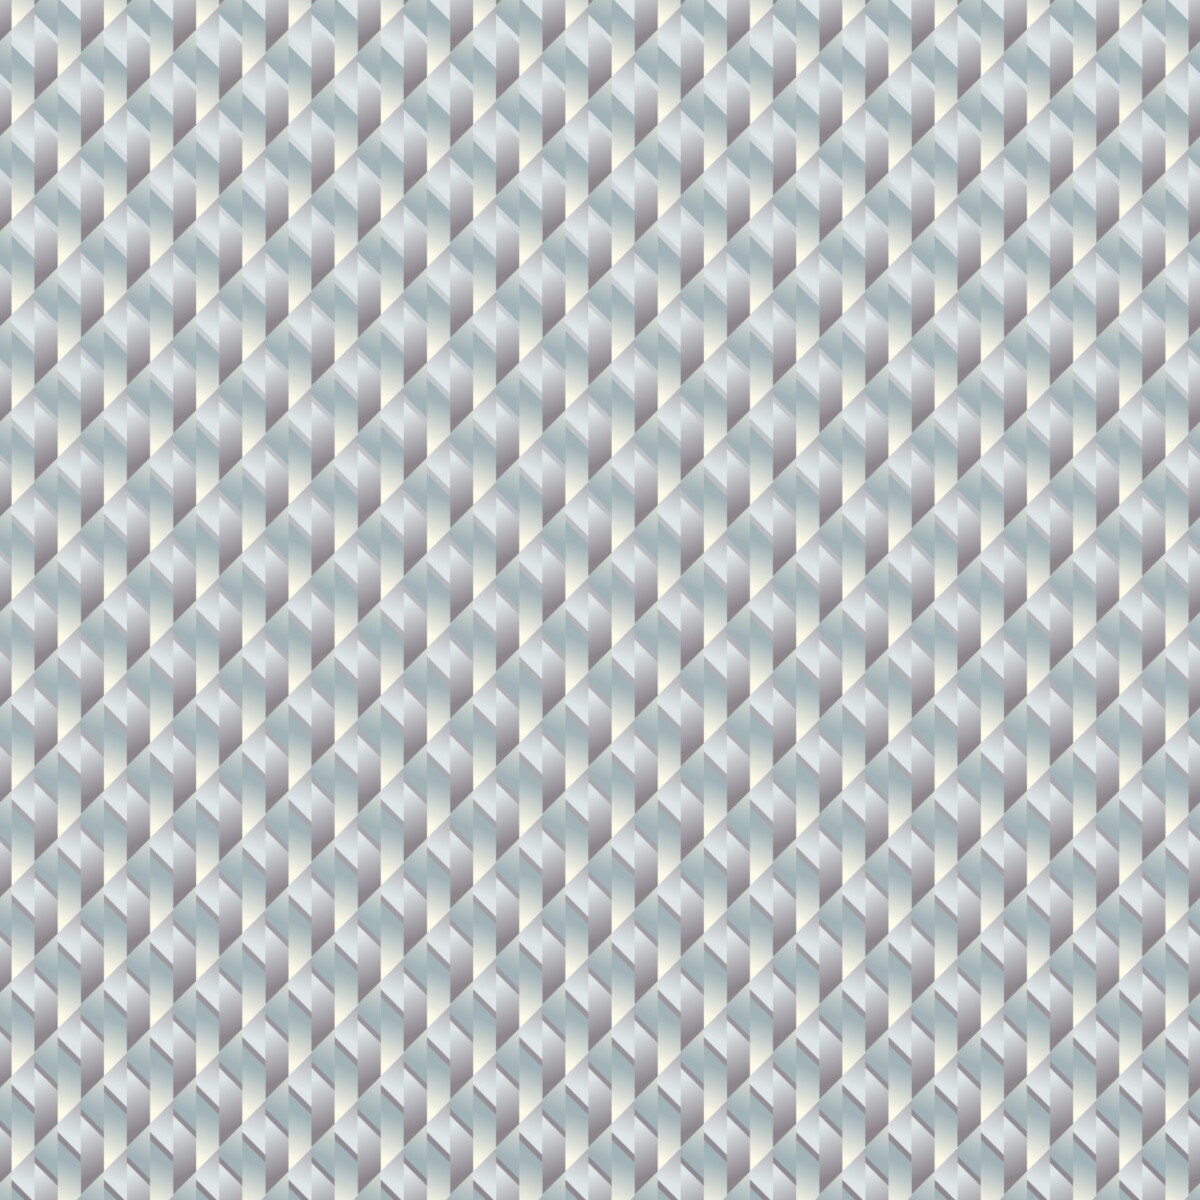 Gradient Tiles 1 II, Surface Design